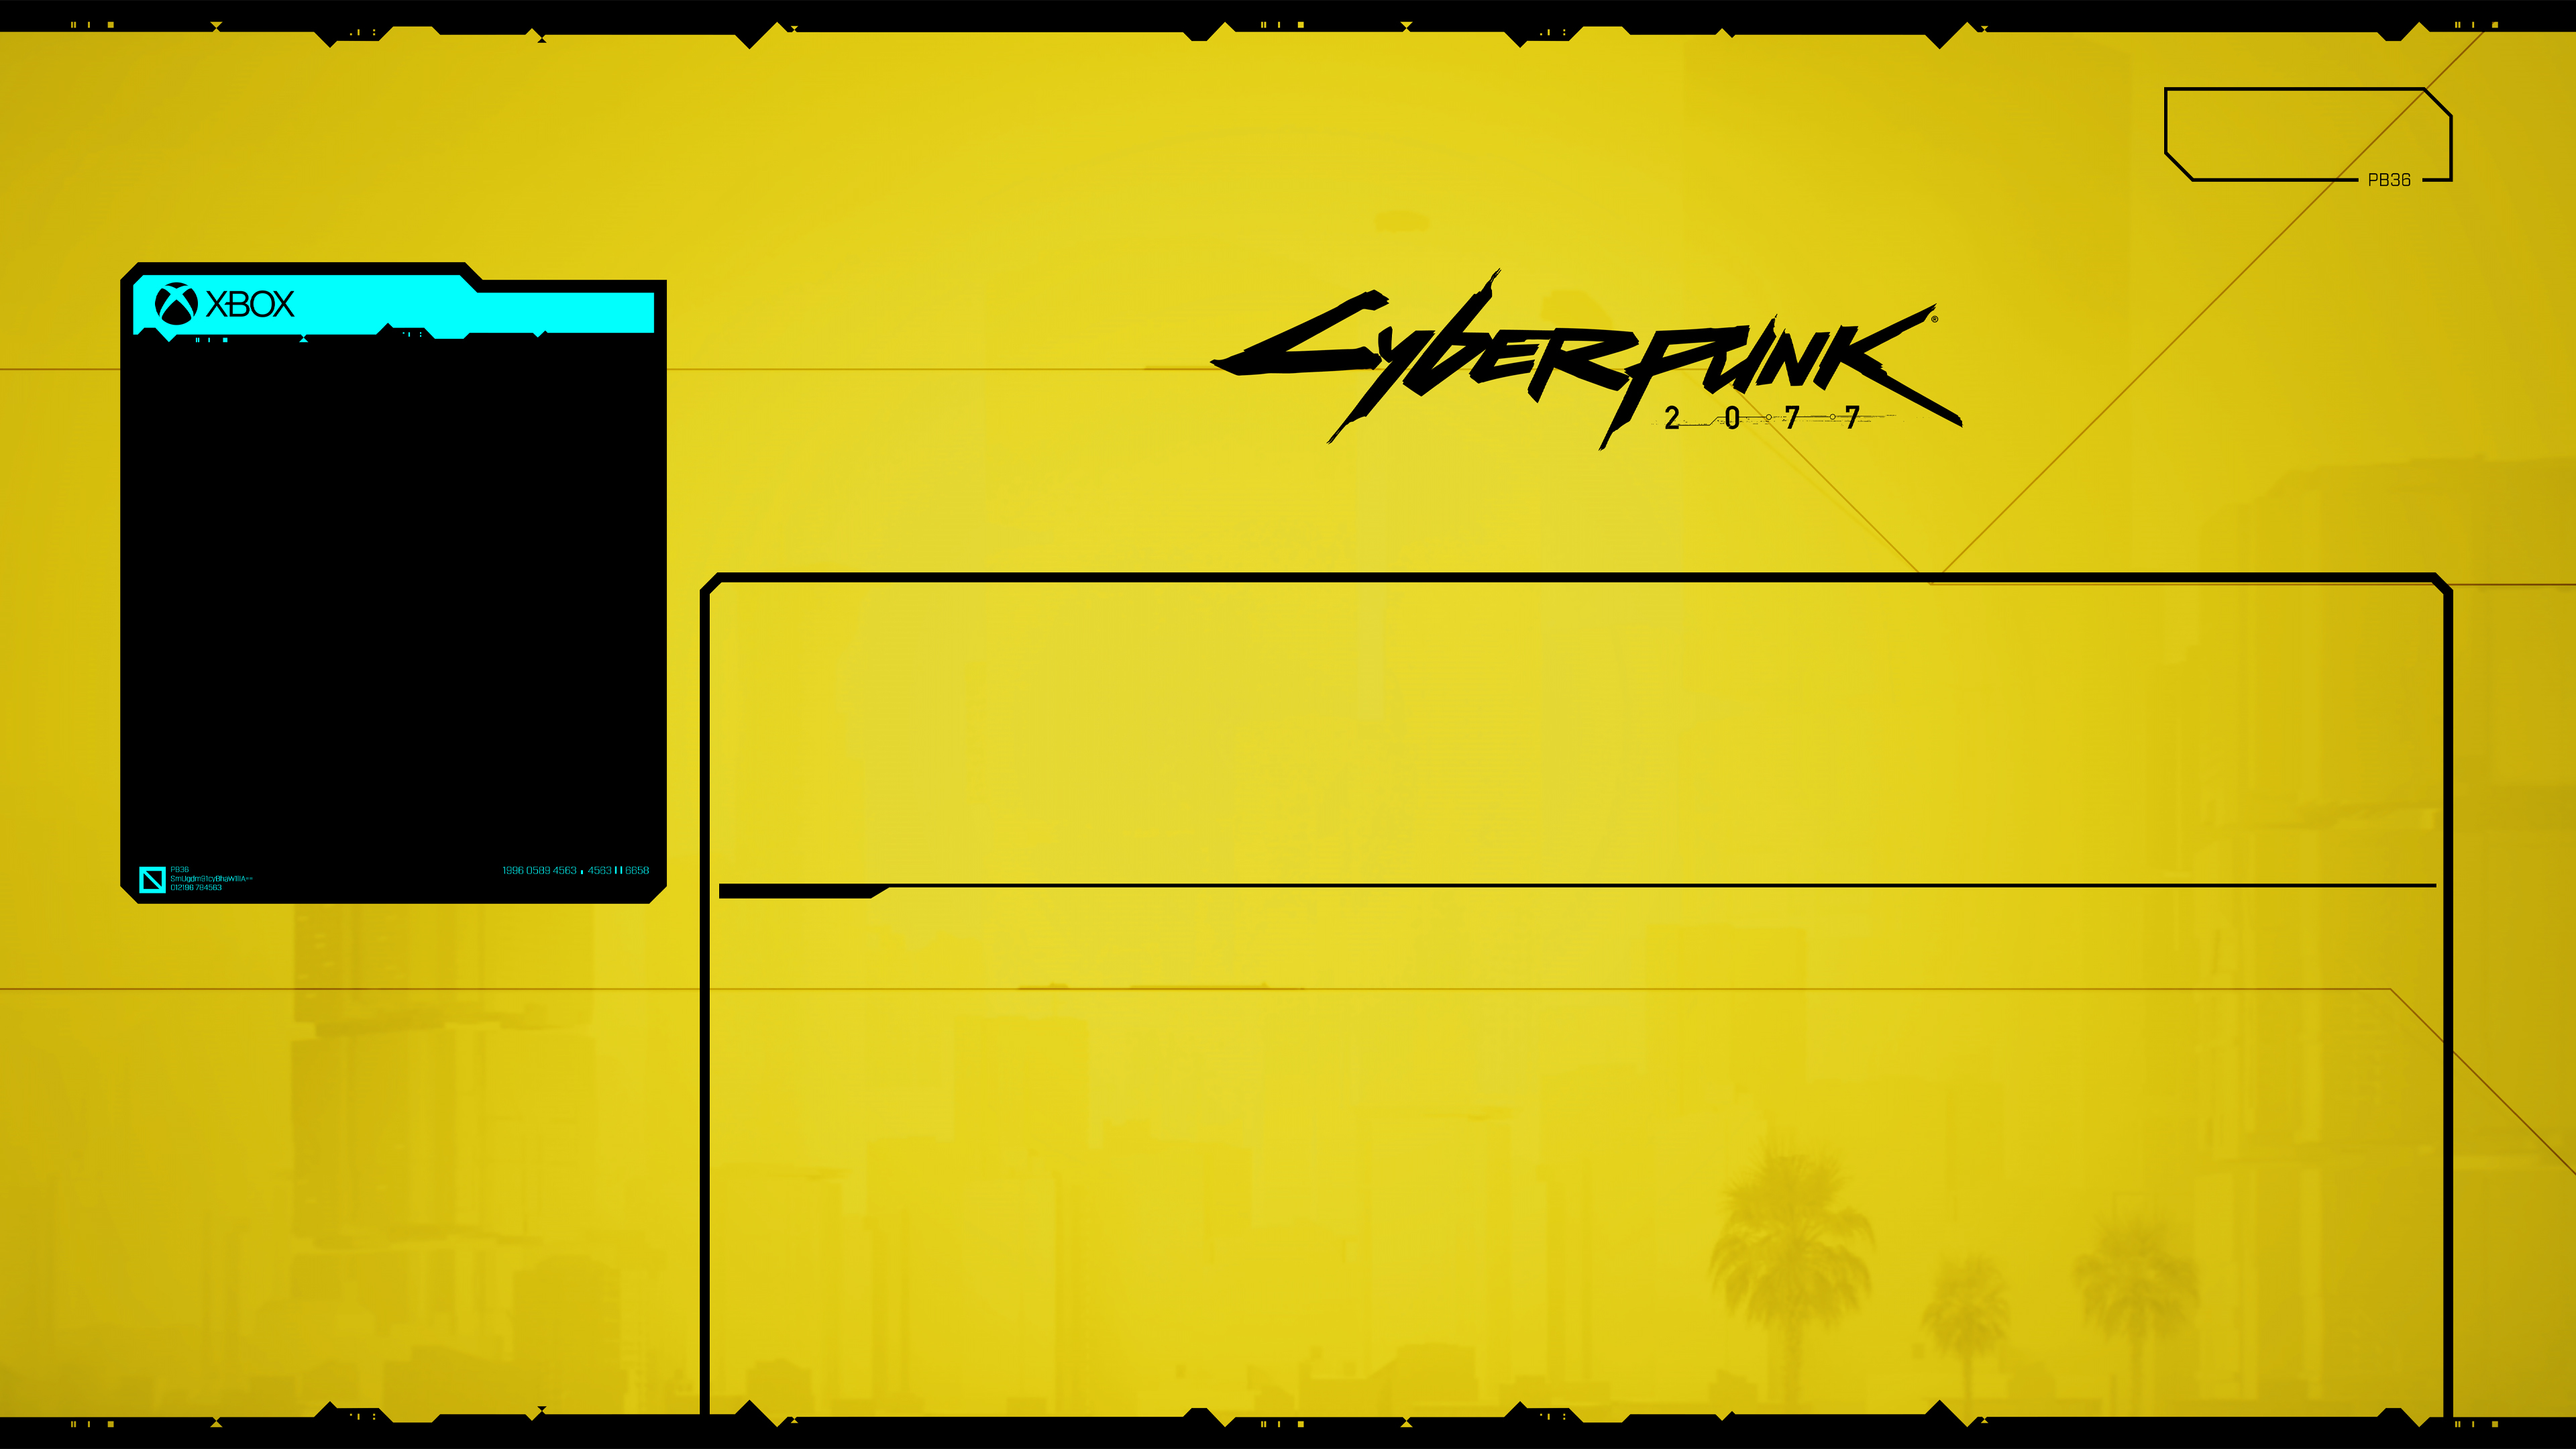 Wallpaper-Cyberpunk-4k by Playbox36 on DeviantArt